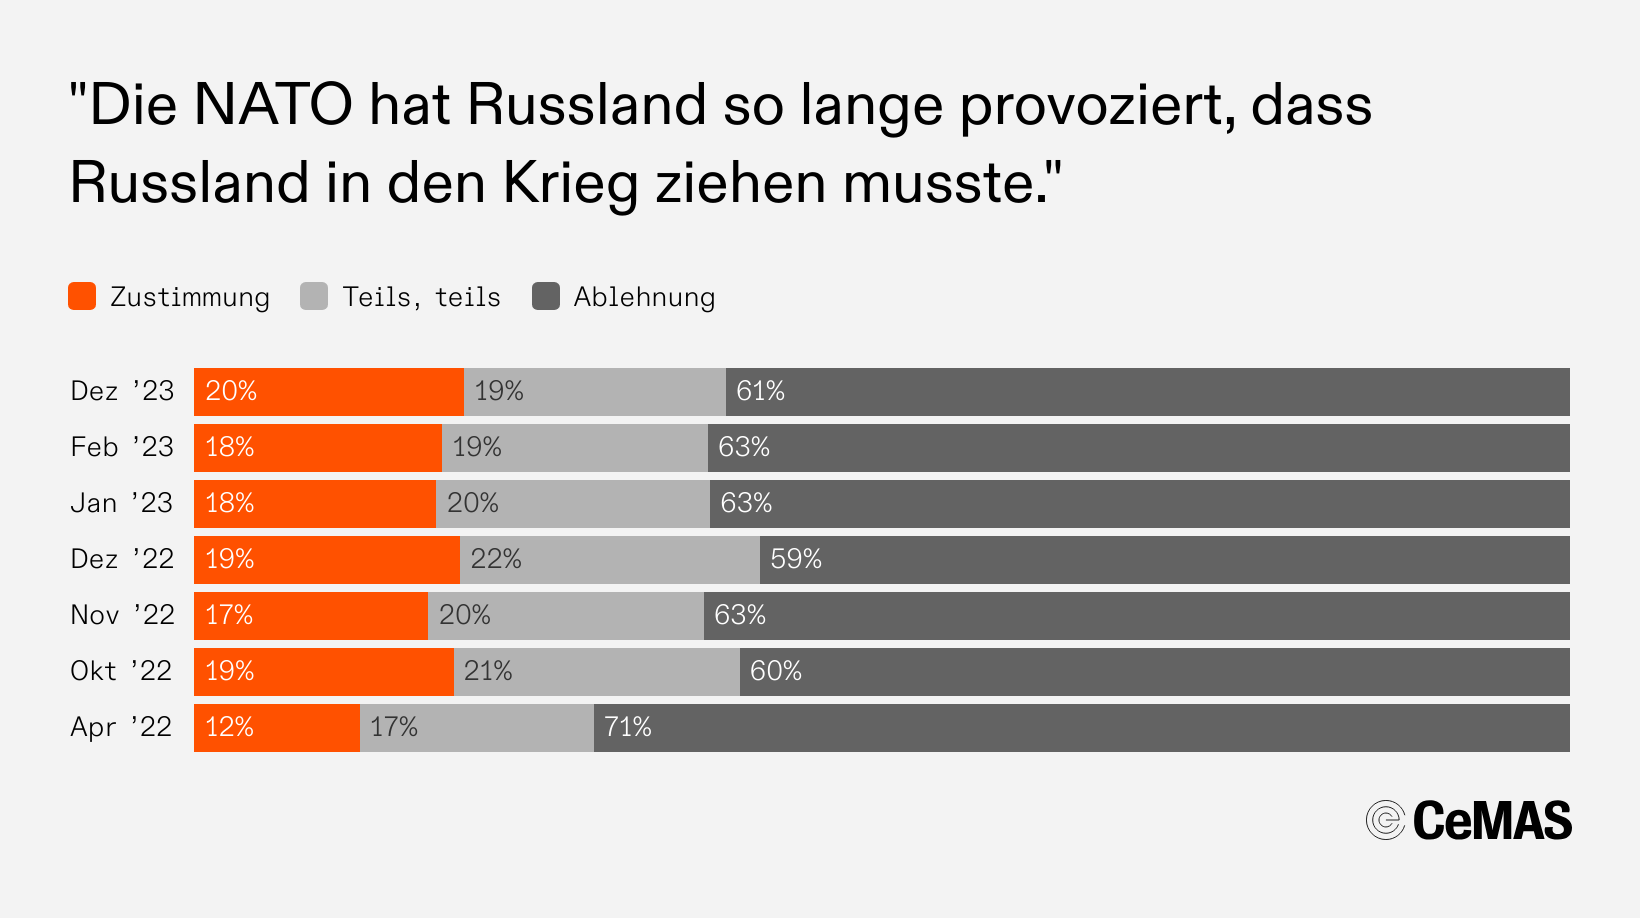 Zustimmungswerte zur Aussage „Die NATO hat Russland so lange provoziert, dass Russland in den Krieg ziehen musste“:
  Dez 23: Zustimmung 20 %, Teils teils 19 %, Ablehnung 61 %
  Feb 23: Zustimmung 18 %, Teils teils 19 %, Ablehnung 63 %
  Jan 23: Zustimmung 18 %, Teils teils 20 %, Ablehnung 63 %
  Dez 22: Zustimmung 19 %, Teils teils 22 %, Ablehnung 59 %
  Nov 22: Zustimmung 17 %, Teils teils 20 %, Ablehnung 63 %
  Okt 22: Zustimmung 19 %, Teils teils 21 %, Ablehnung 60 %
  Apr 22: Zustimmung 12 %, Teils teils 17 %, Ablehnung 71 %